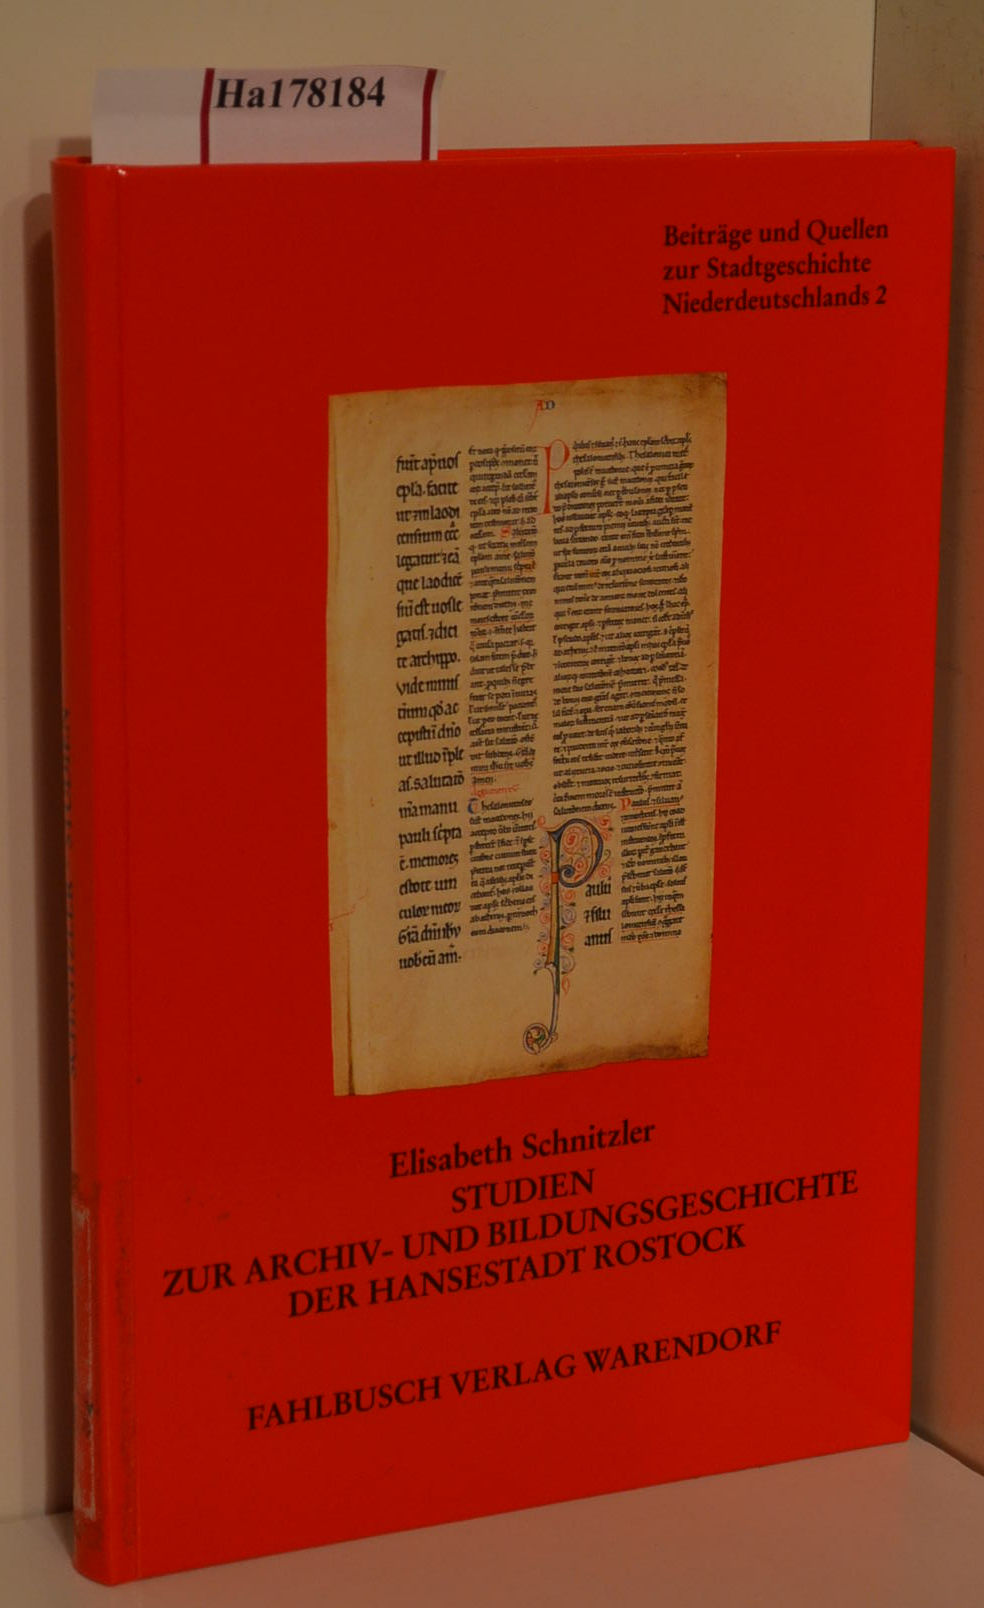 Studien zur Archiv- und Bildungsgeschichte der Hansestadt Rostock. ( = Beiträge und Quellen zur Stadtgeschichte Niederdeutschlands, 2) . - Schnitzler, Elisabeth